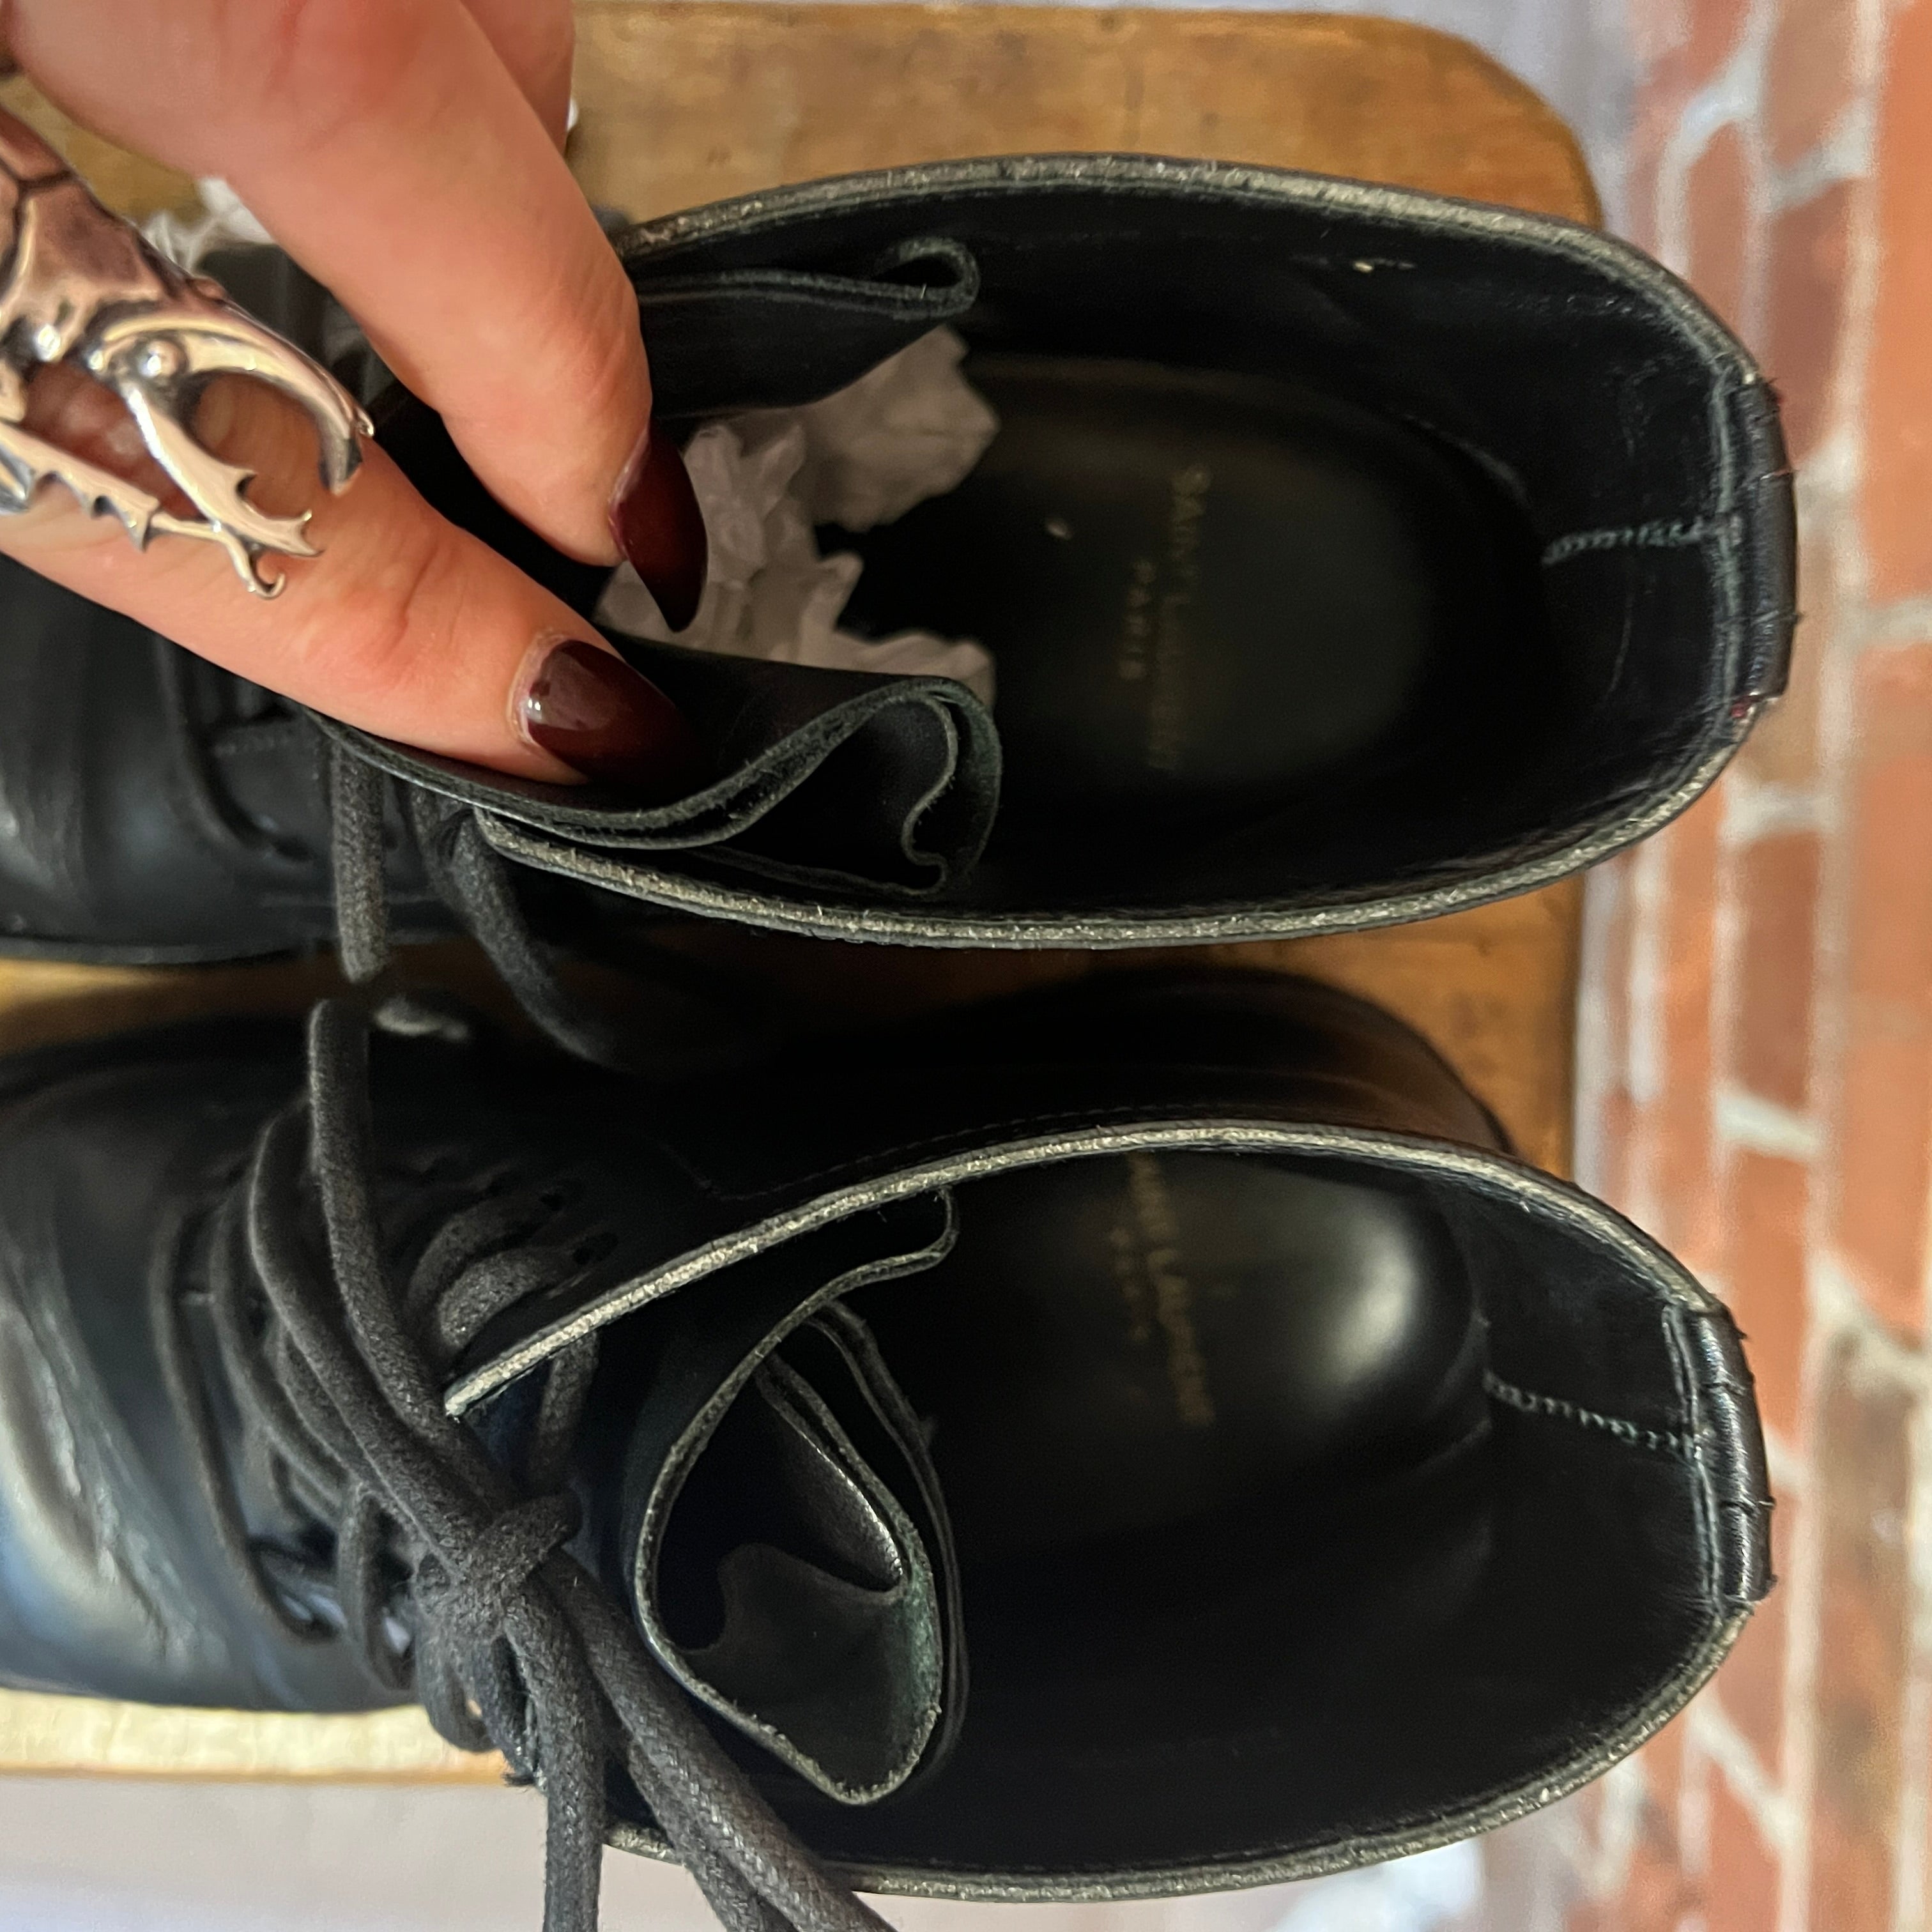 SAINT LAURENT leather boots 38